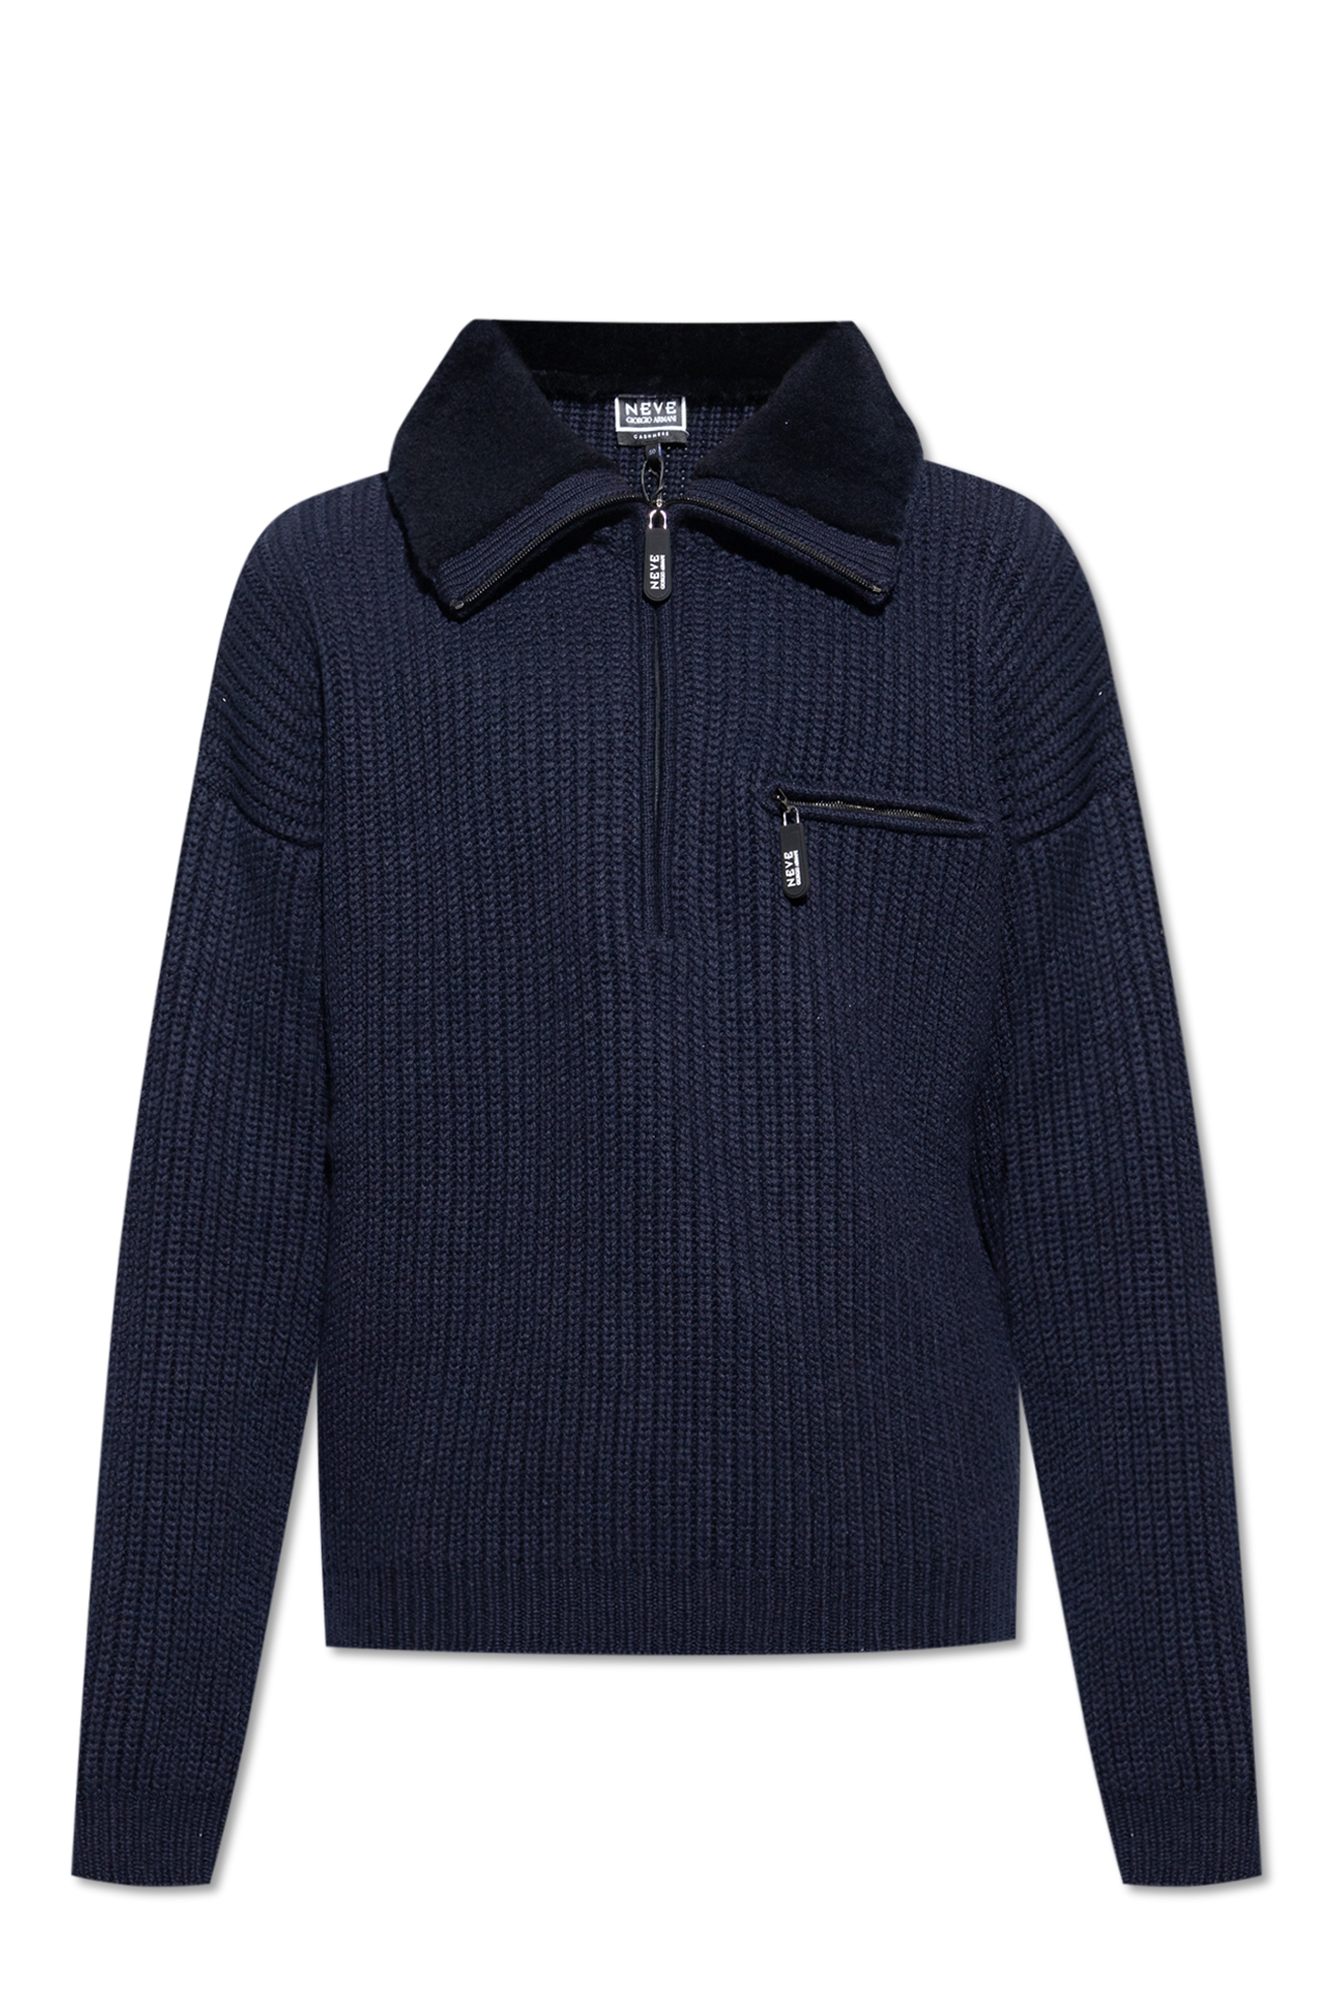 Giorgio Armani Cashmere Sweater - Blue - 52